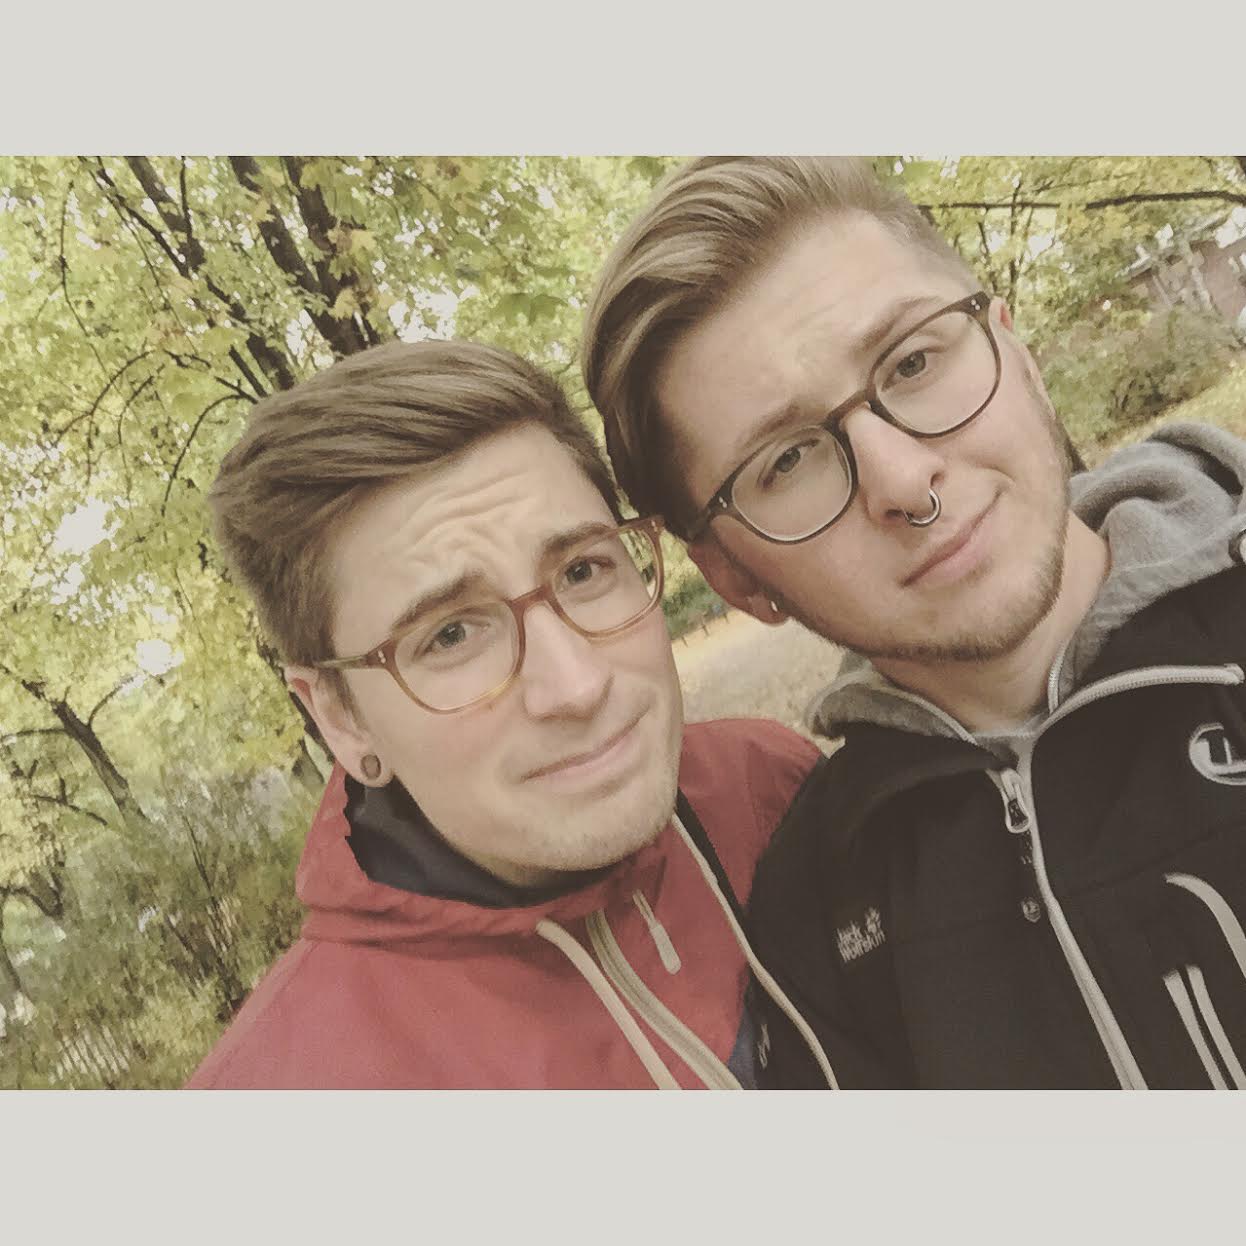 Parejas de novios gays que parecen gemelos